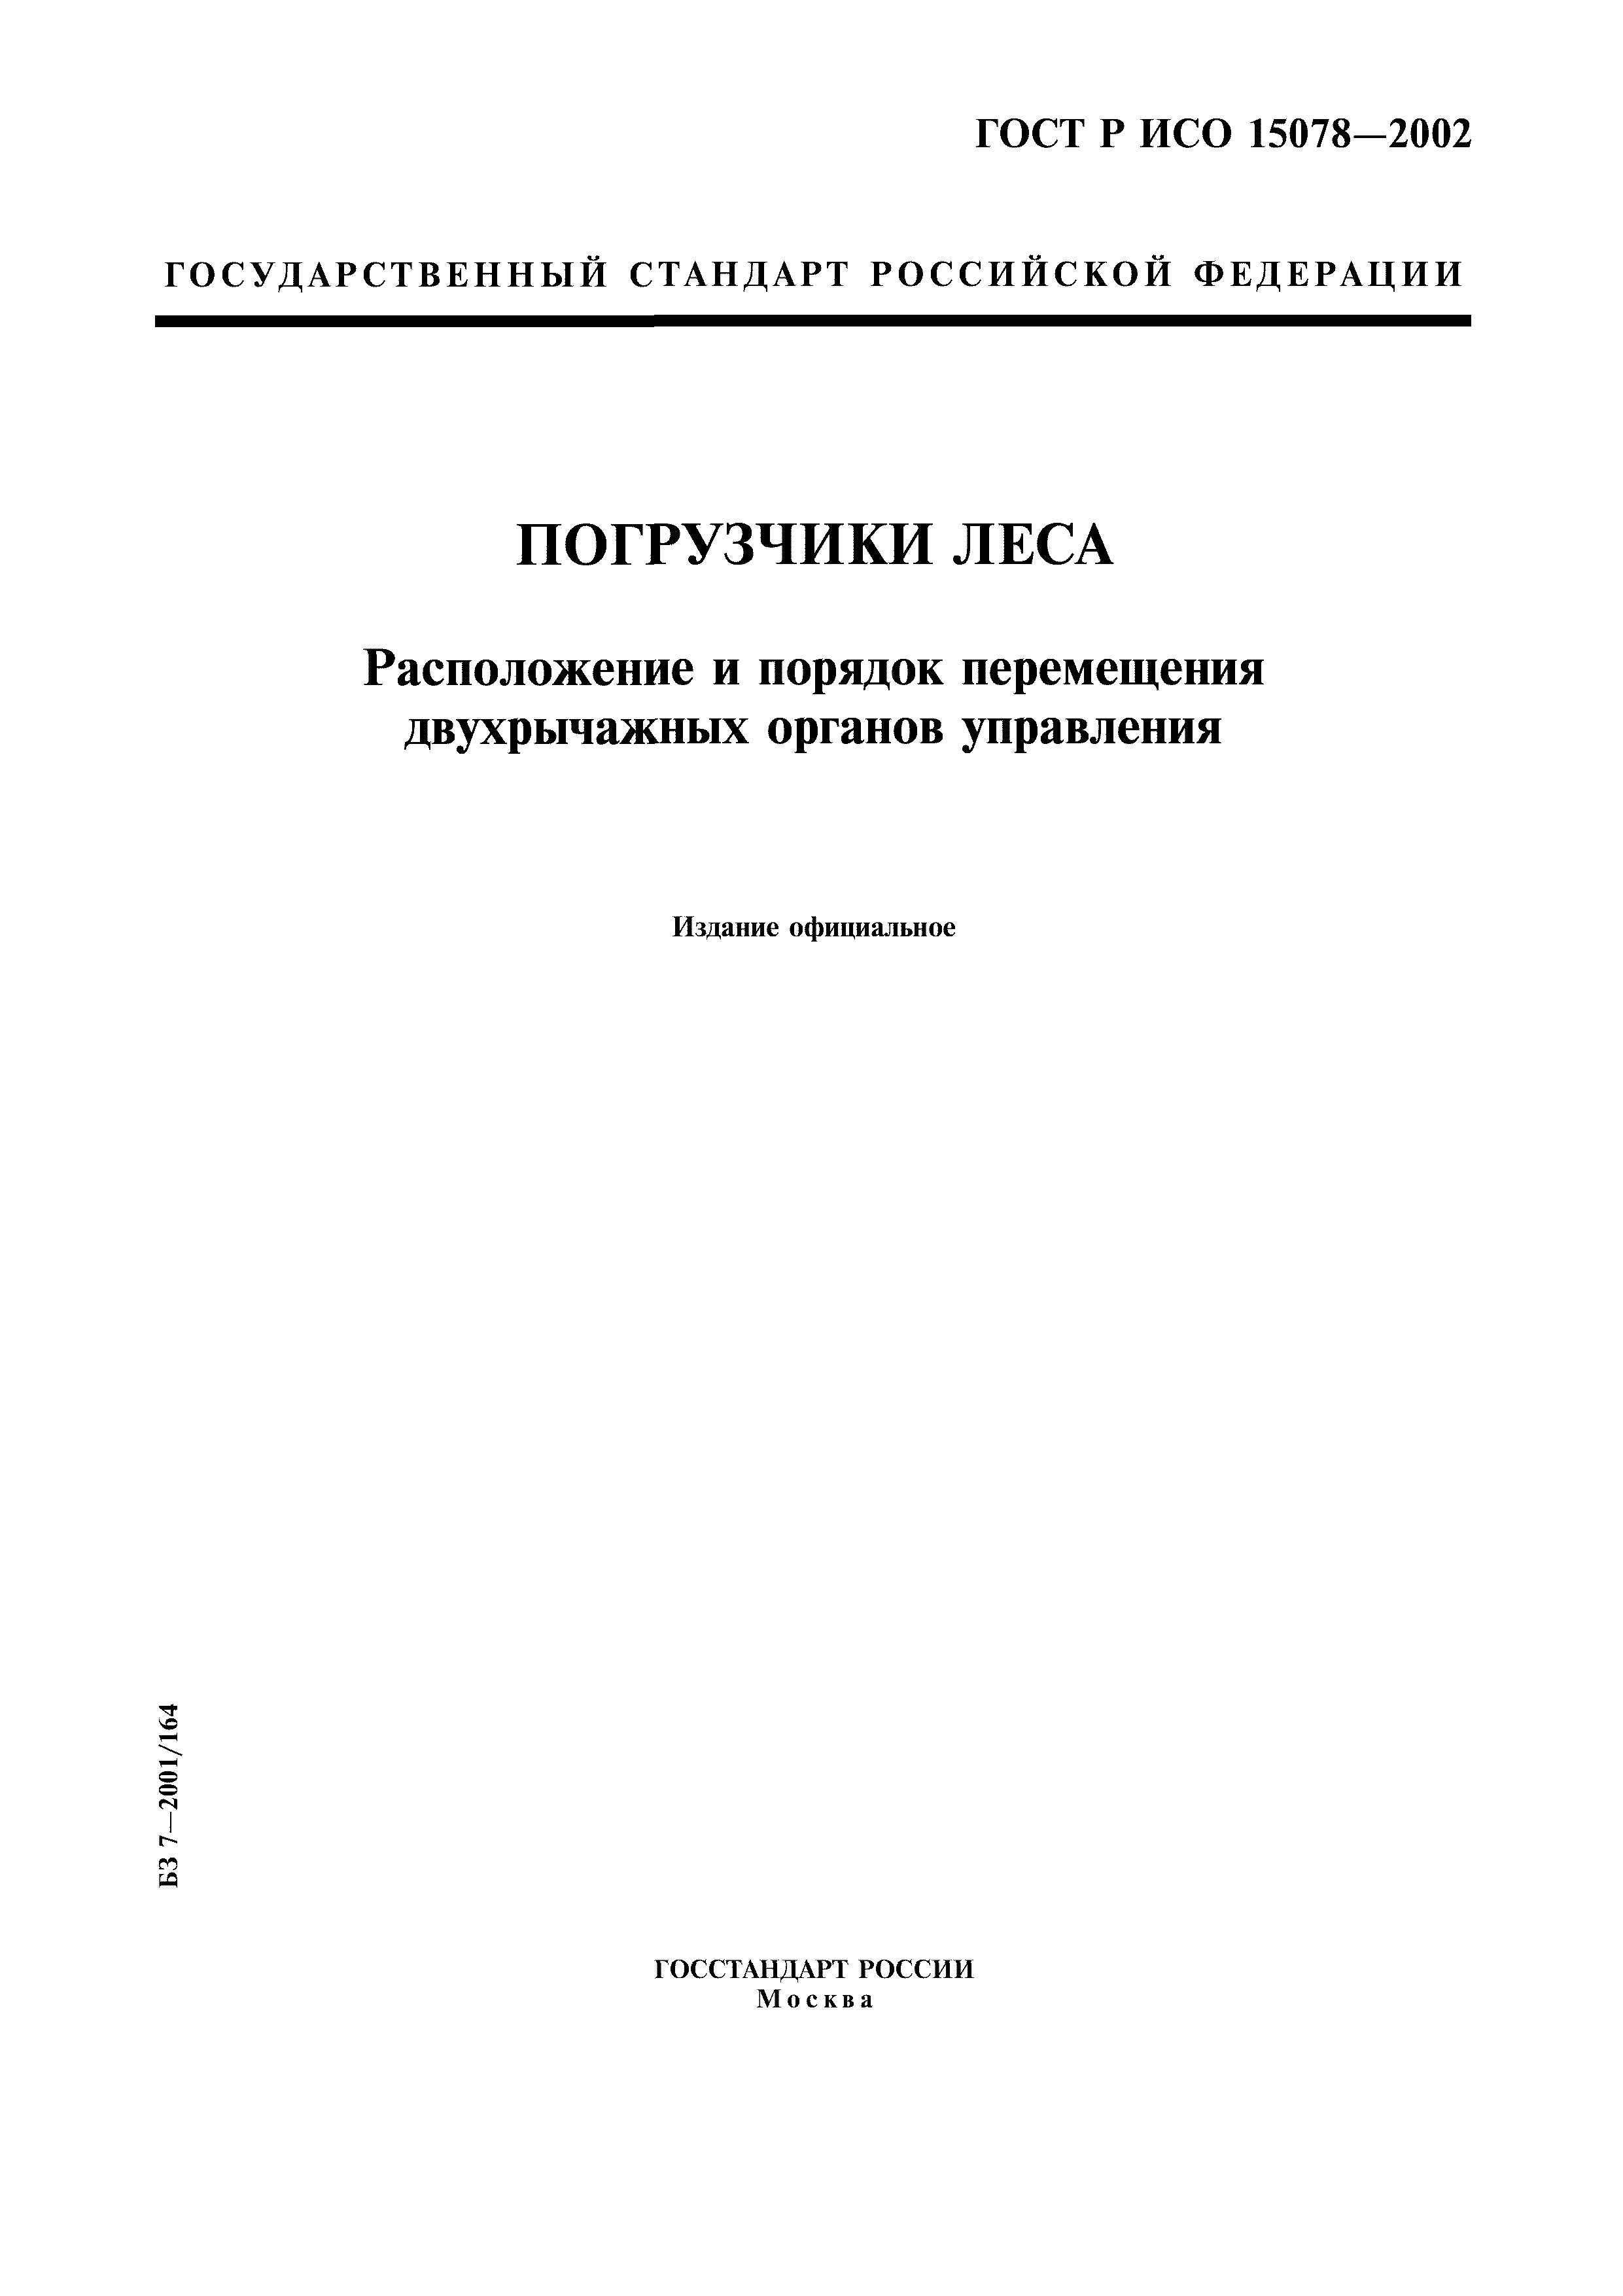 ГОСТ Р ИСО 15078-2002